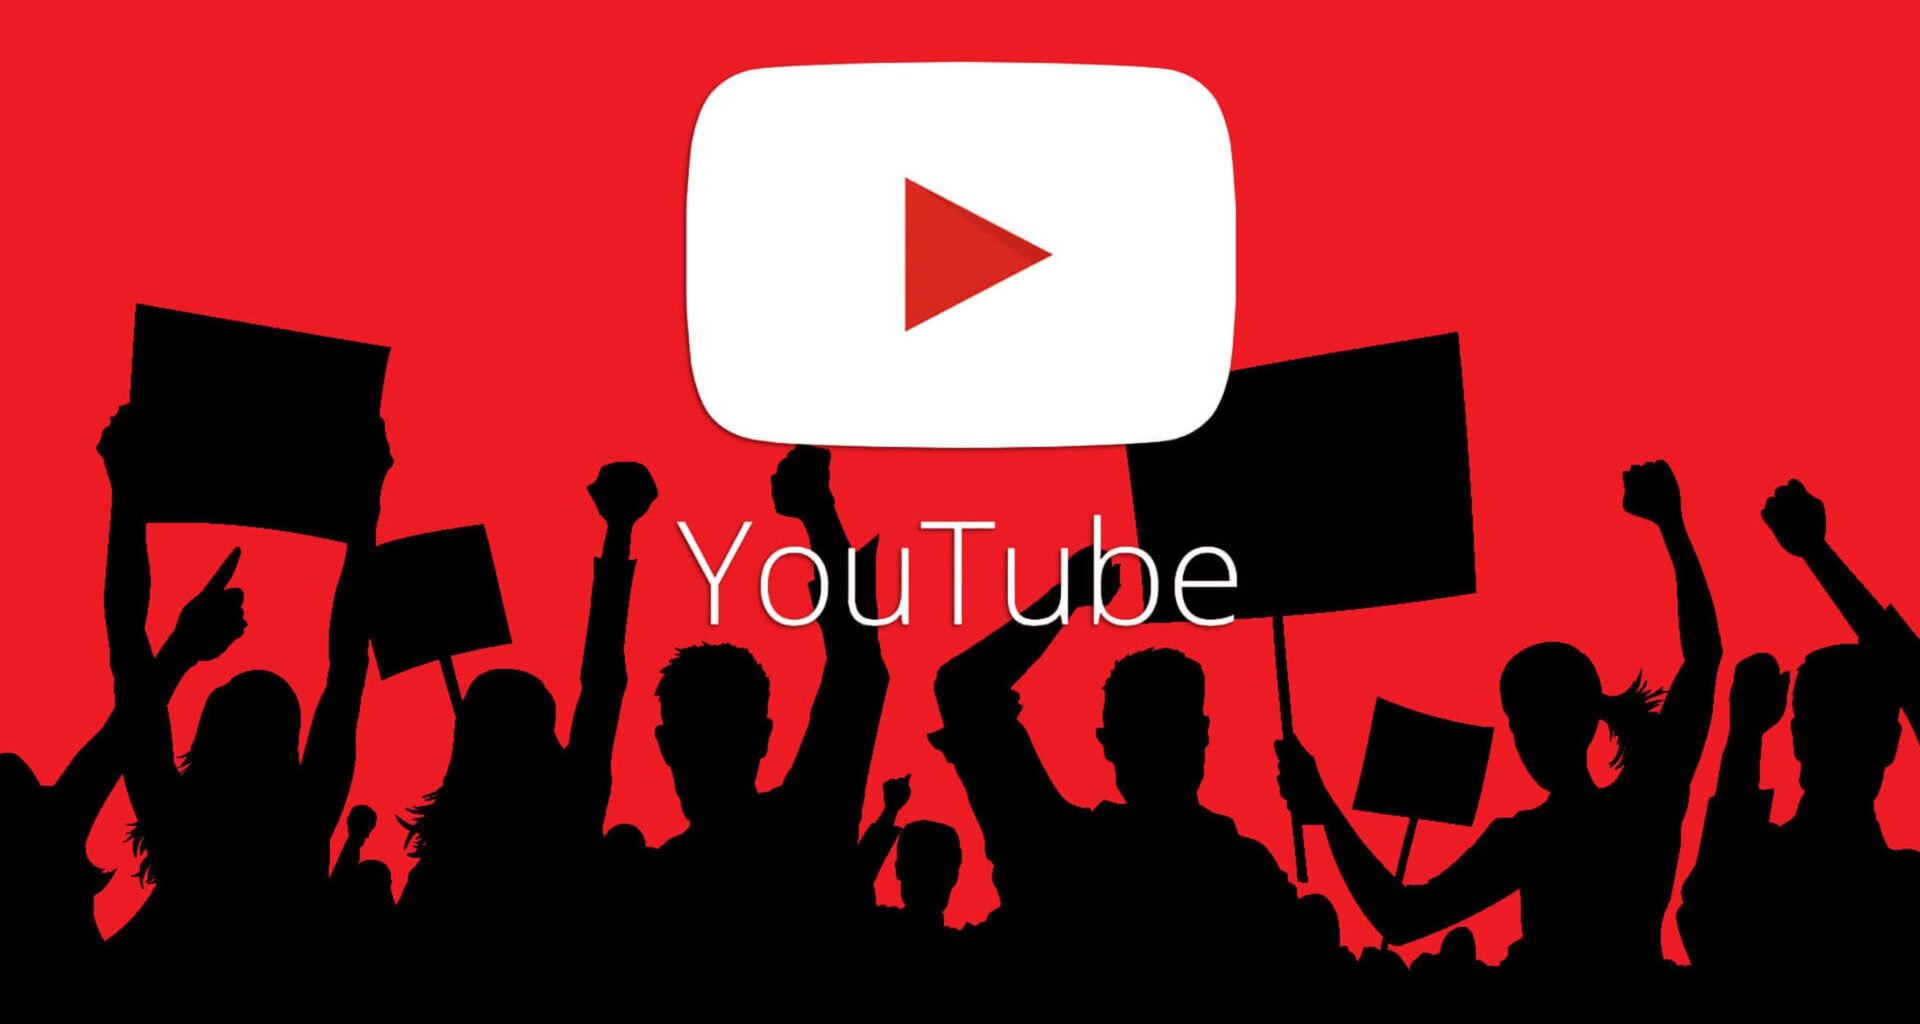 Youtube Premium Apk indir Son Sürüm Güncel MOD